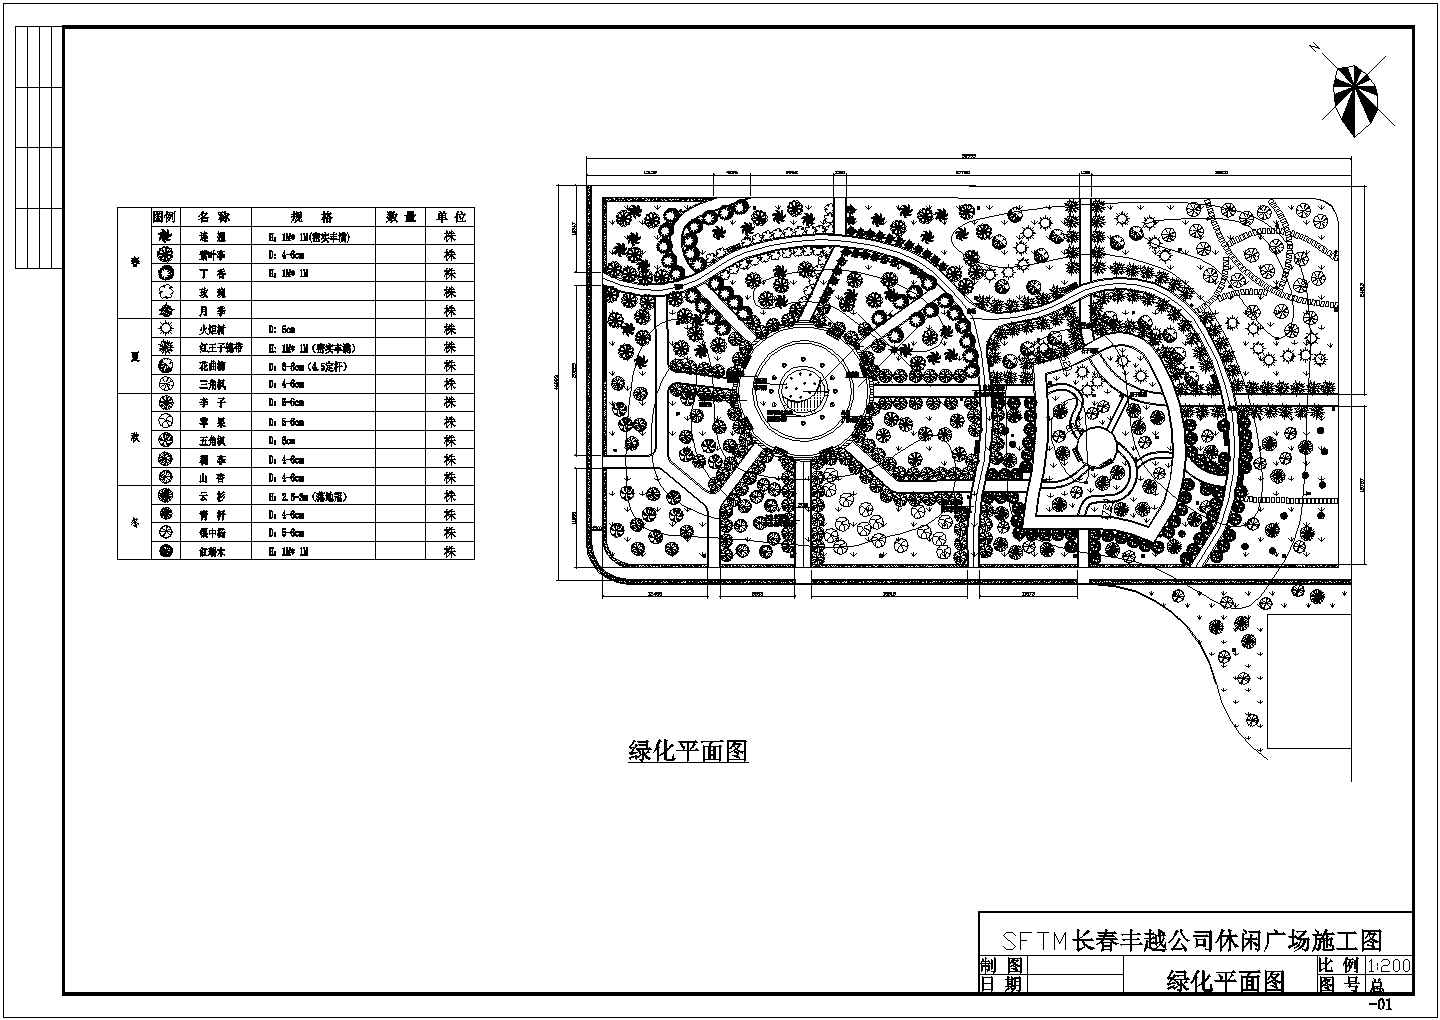 长春市丰越休闲广场绿化项目施工规划说明全套图